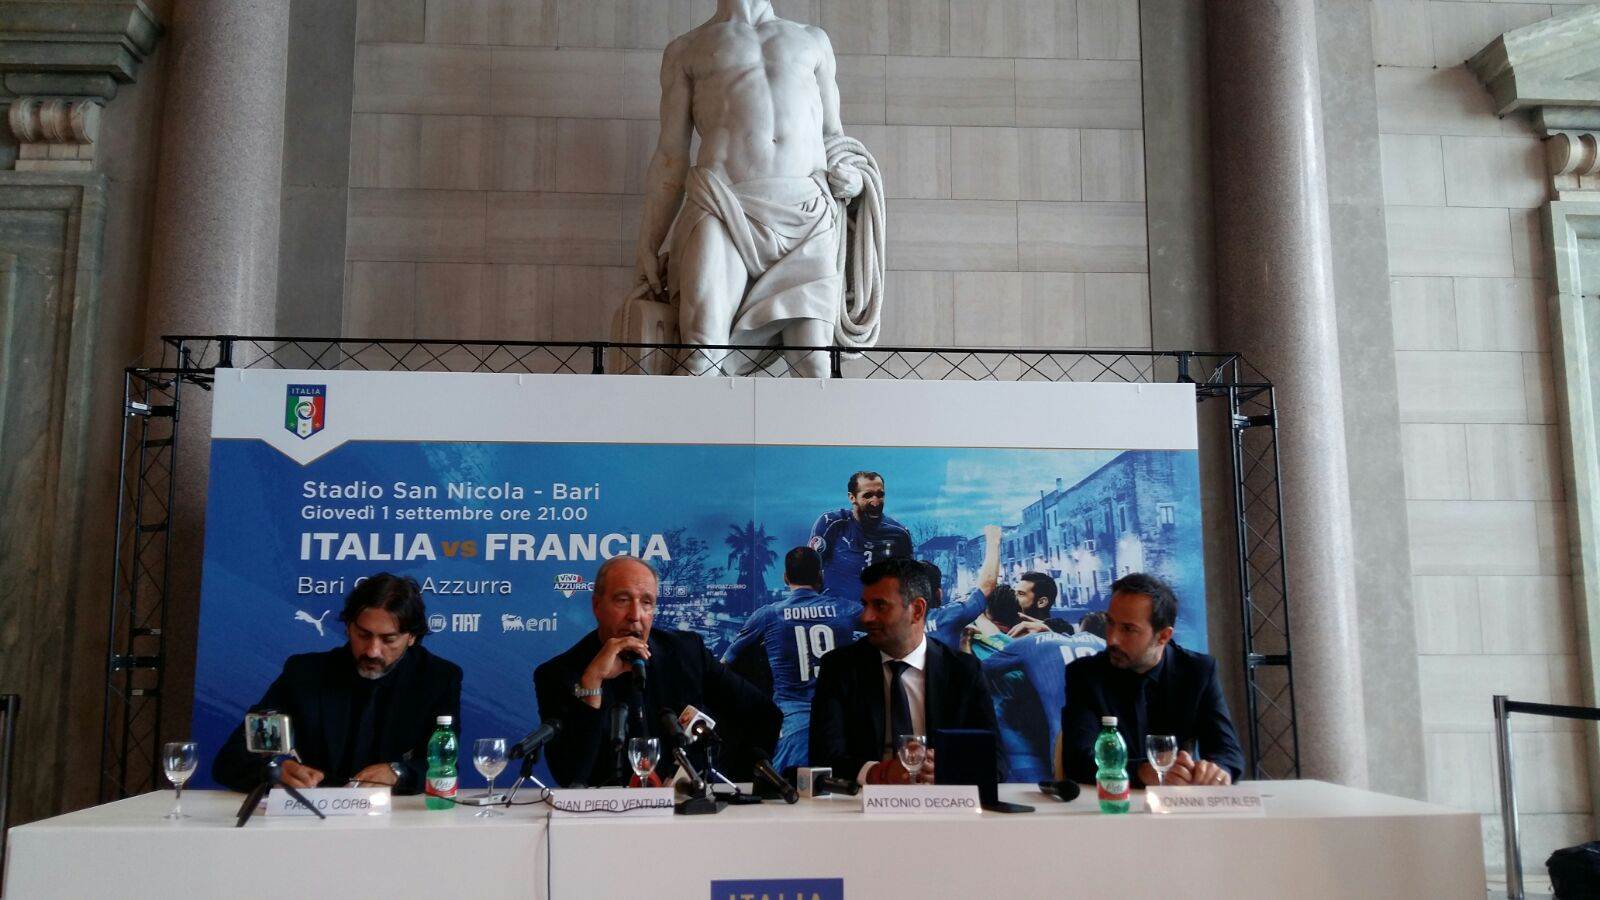 La conferenza stampa di presentazione di Italia - Francia